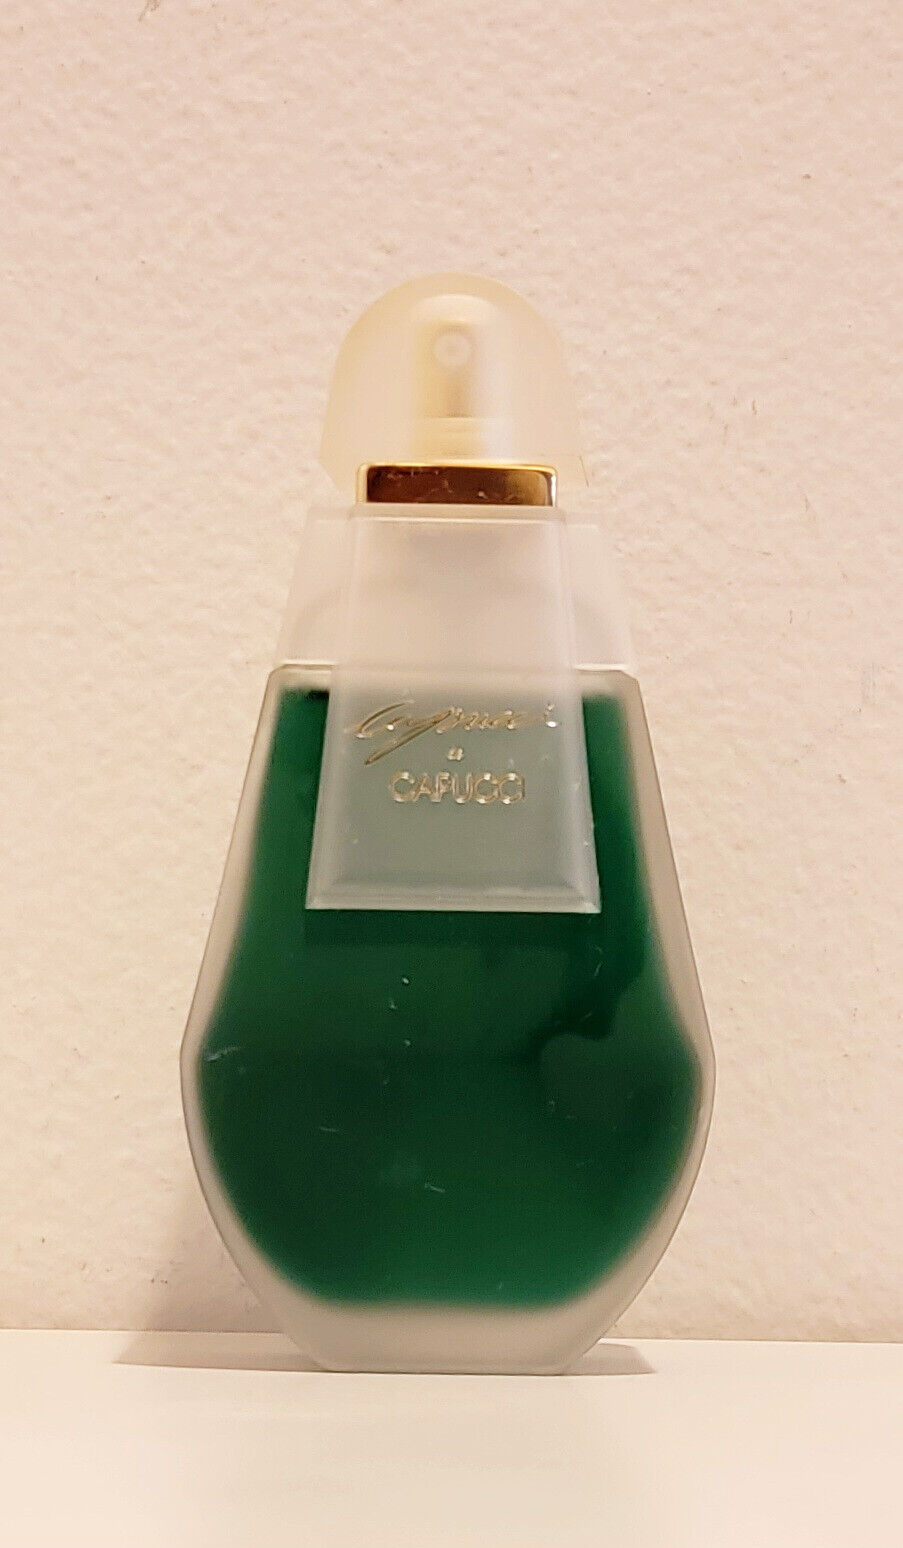 Capucci by Roberto Capucci 3.4 oz / 100 ml Eau De Jour cologne spray for women